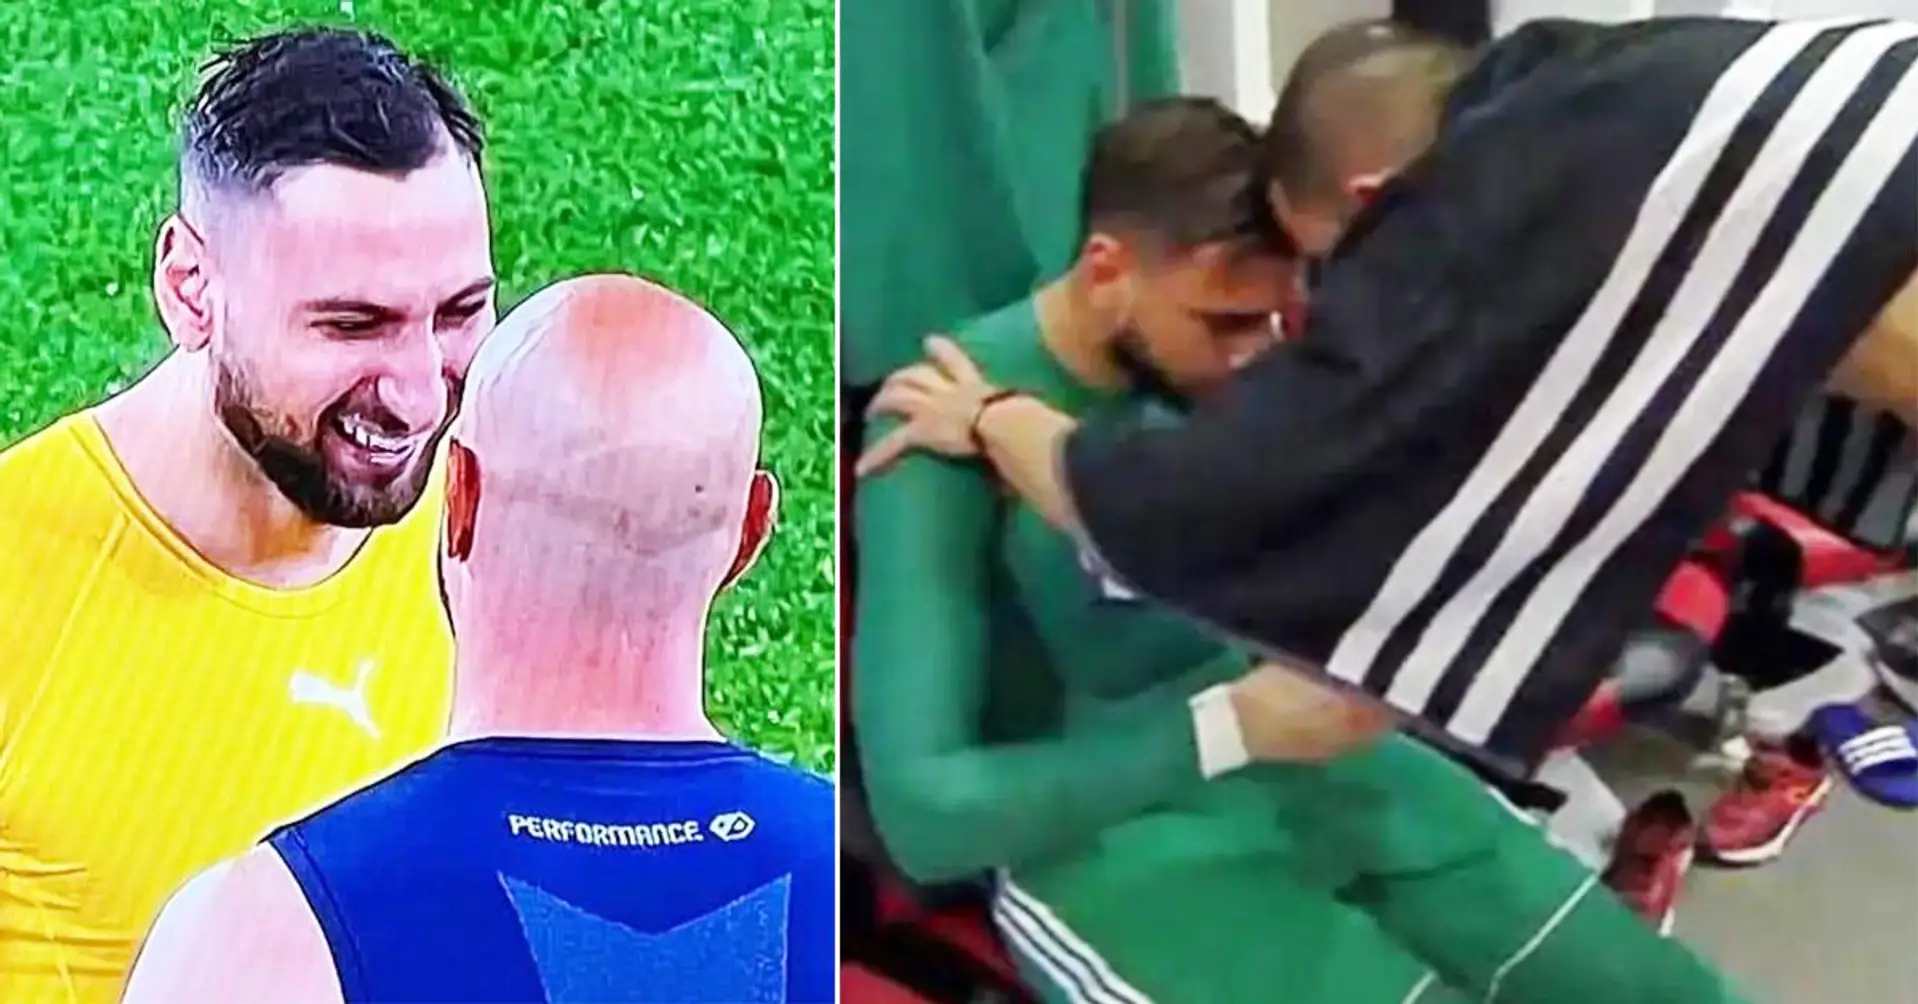 Gianluigi Donnarumma brach in Tränen aus, nachdem Mailand-Fans ihn nach dem berüchtigten "Pepe Reina-Vorfall" bedroht hatten